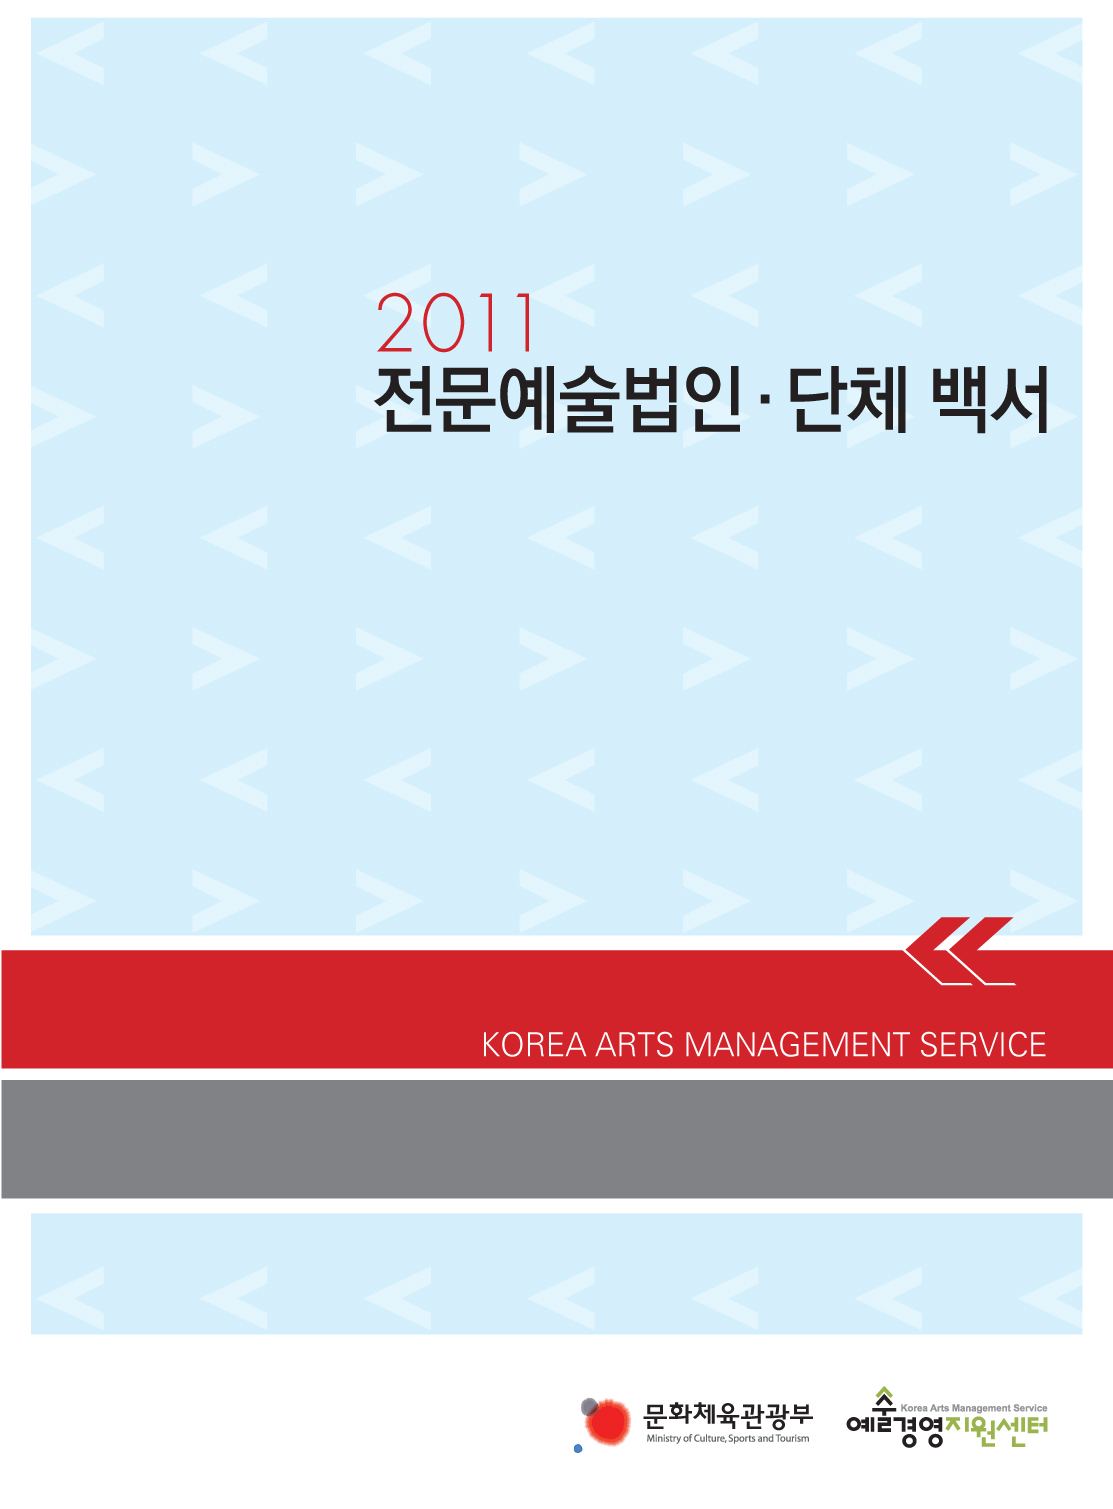 2011 전문예술법인단체 백서 